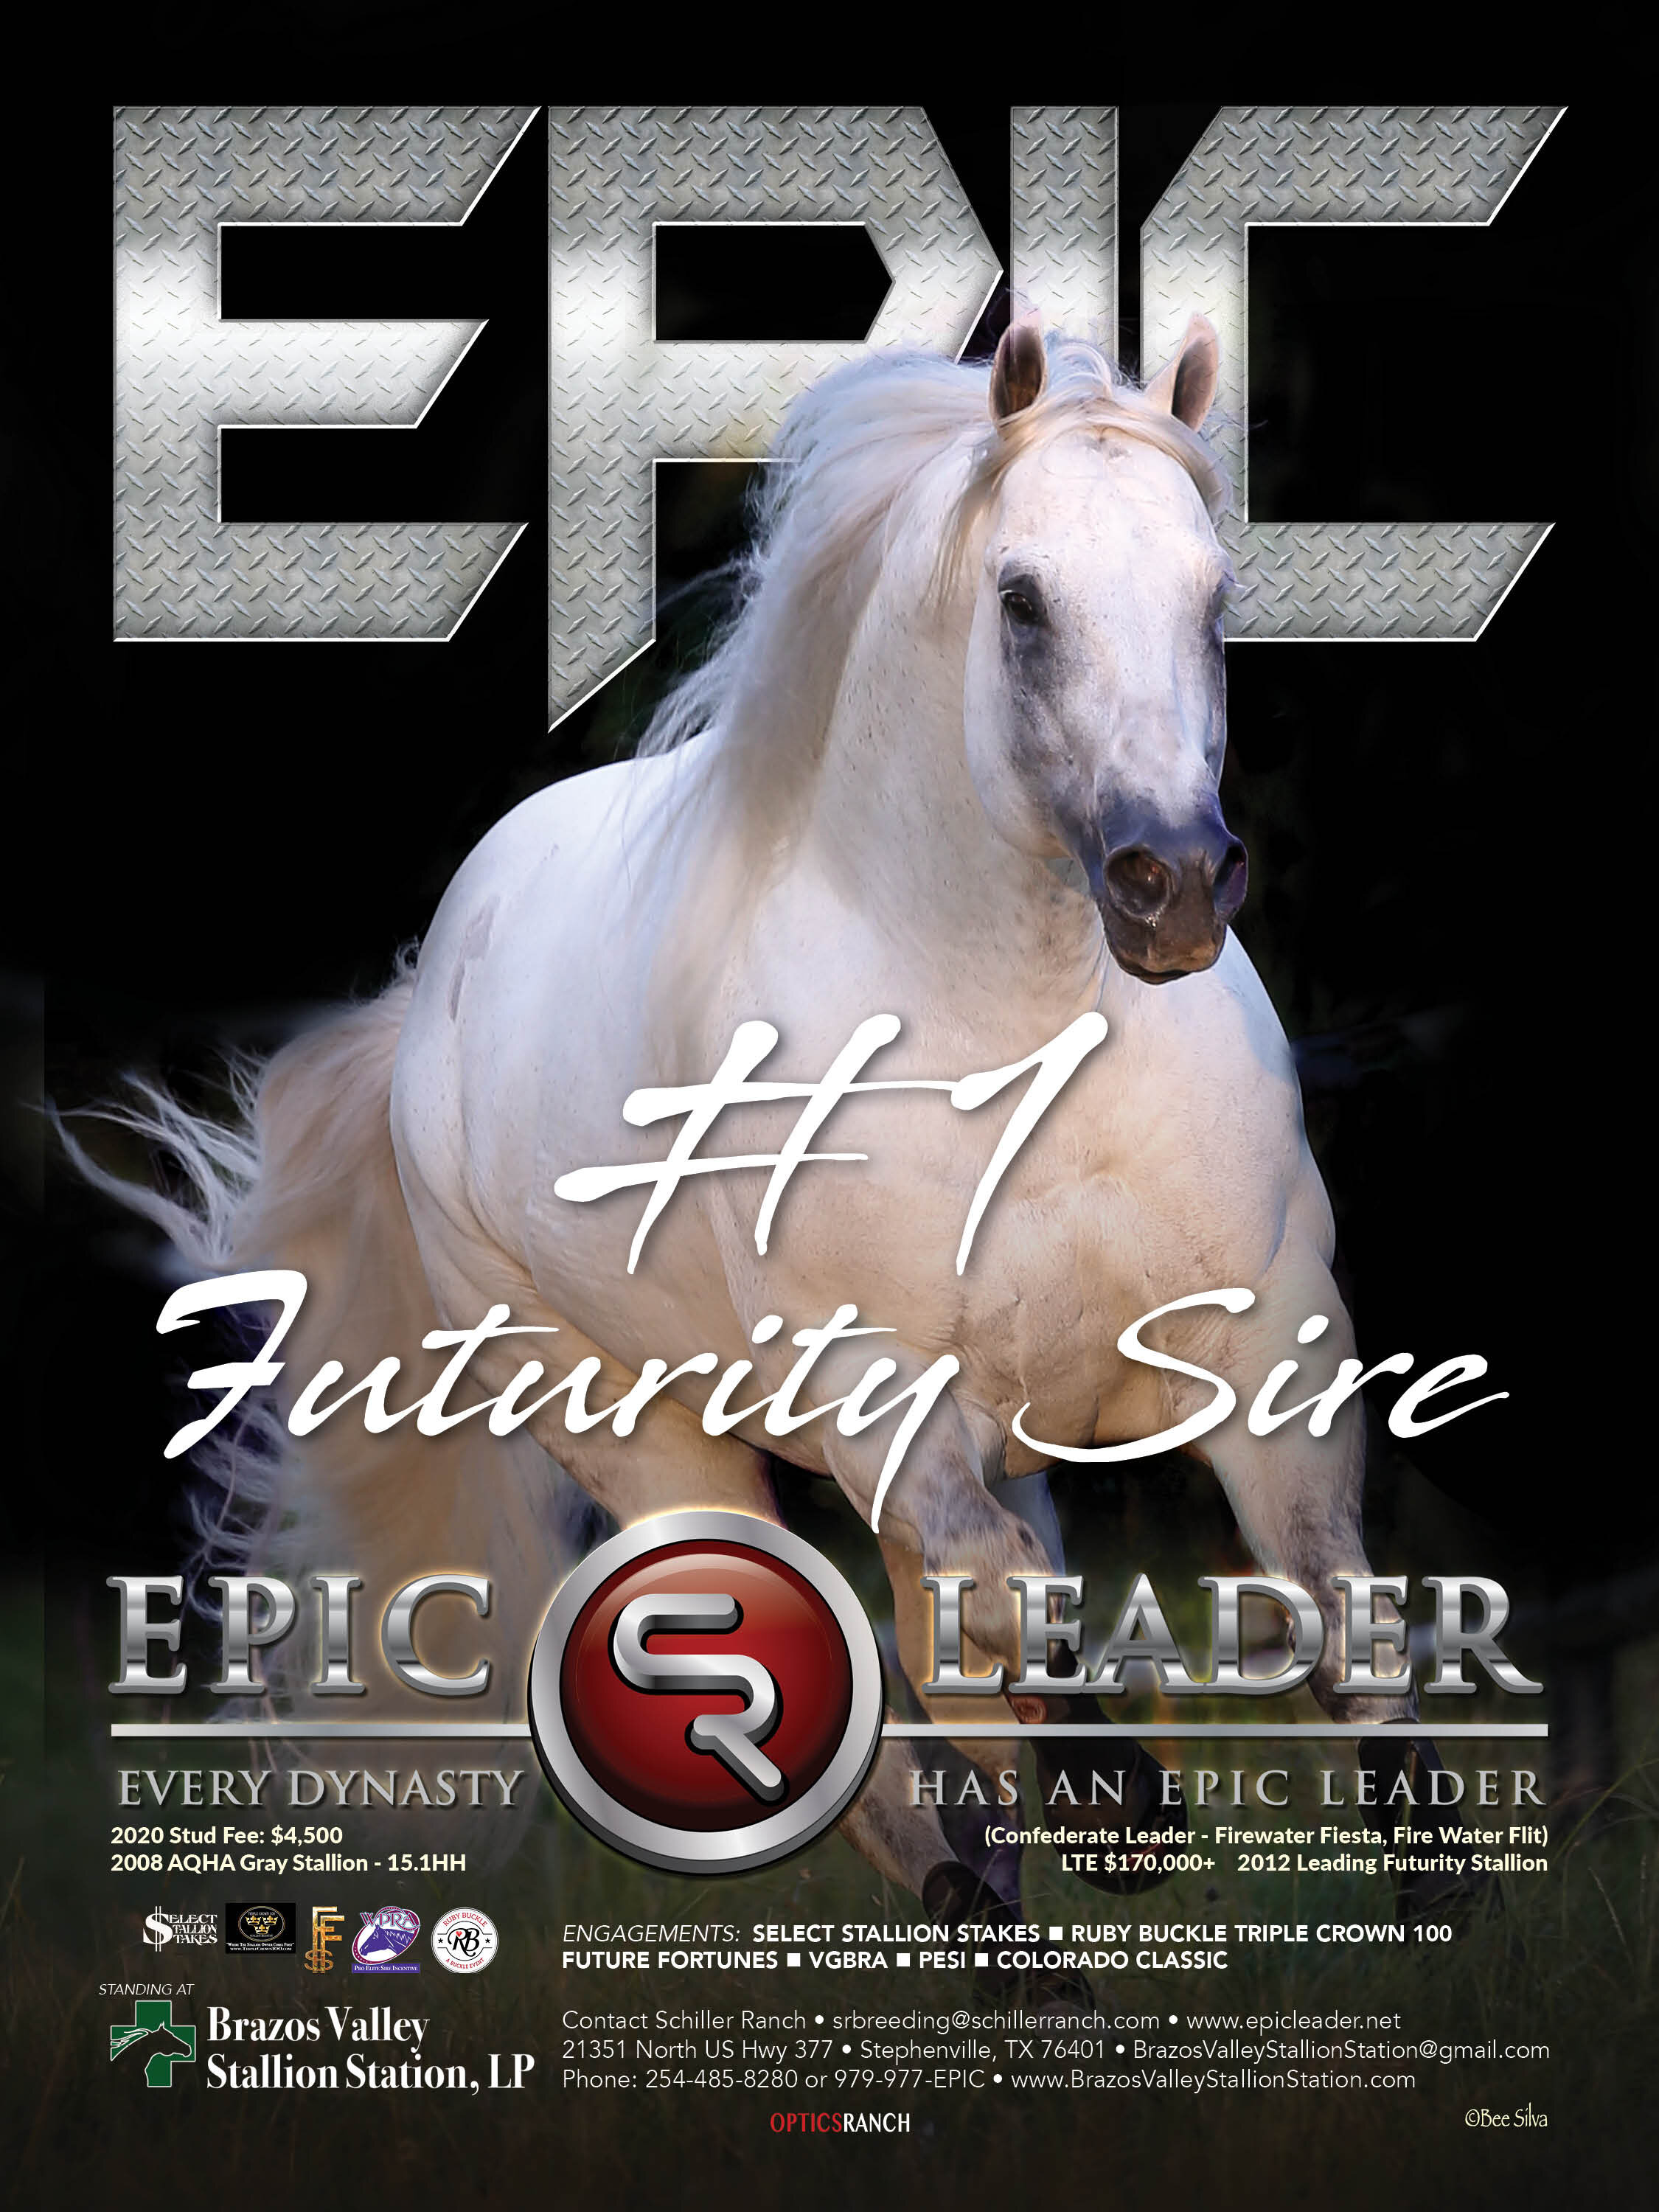 010720 BRR - Epic Leader2.jpg